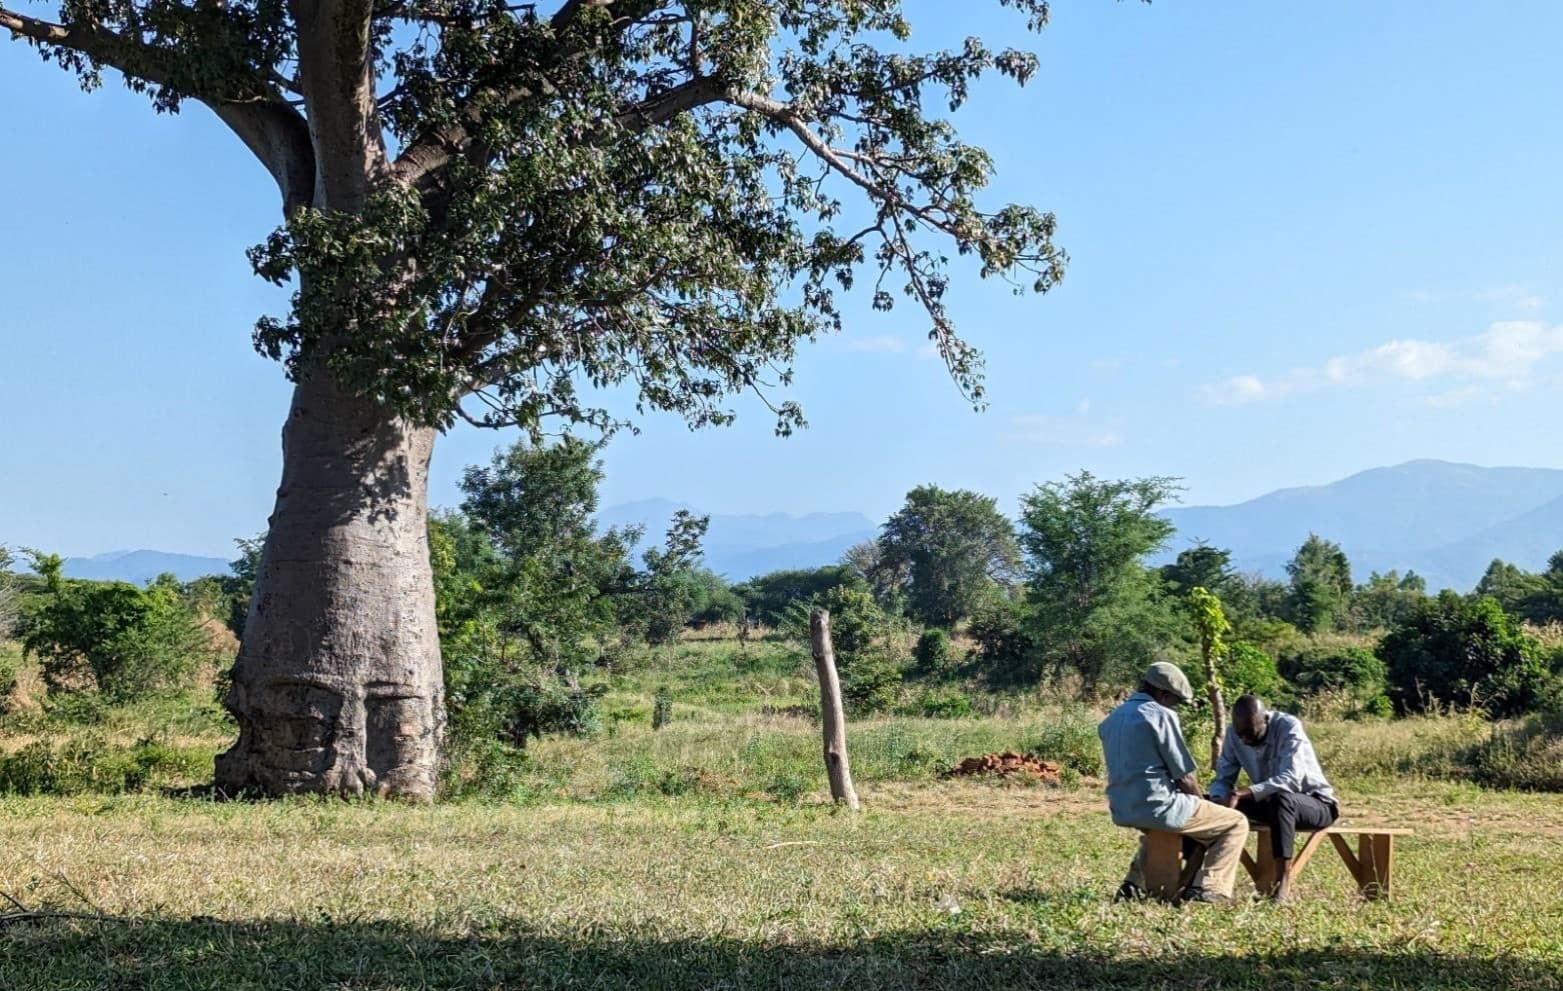 Väter-Gruppen in Malawi: Ein gender-transformativer Ansatz zur Verbesserung des familiären Ernährungsstatus